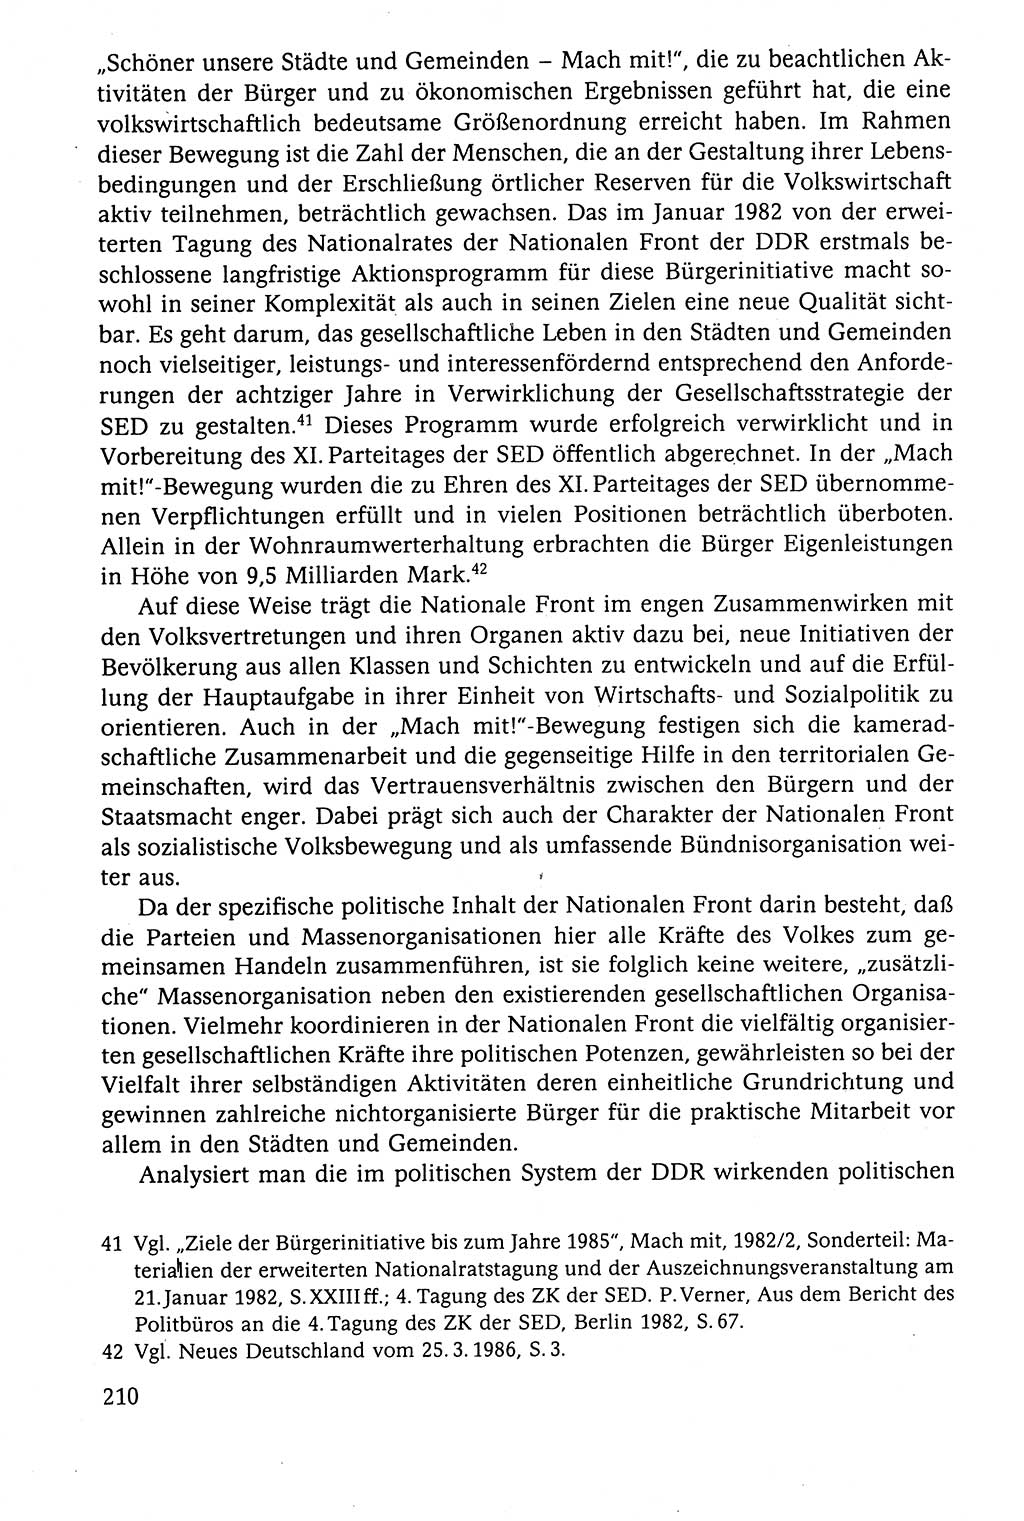 Der Staat im politischen System der DDR (Deutsche Demokratische Republik) 1986, Seite 210 (St. pol. Sys. DDR 1986, S. 210)